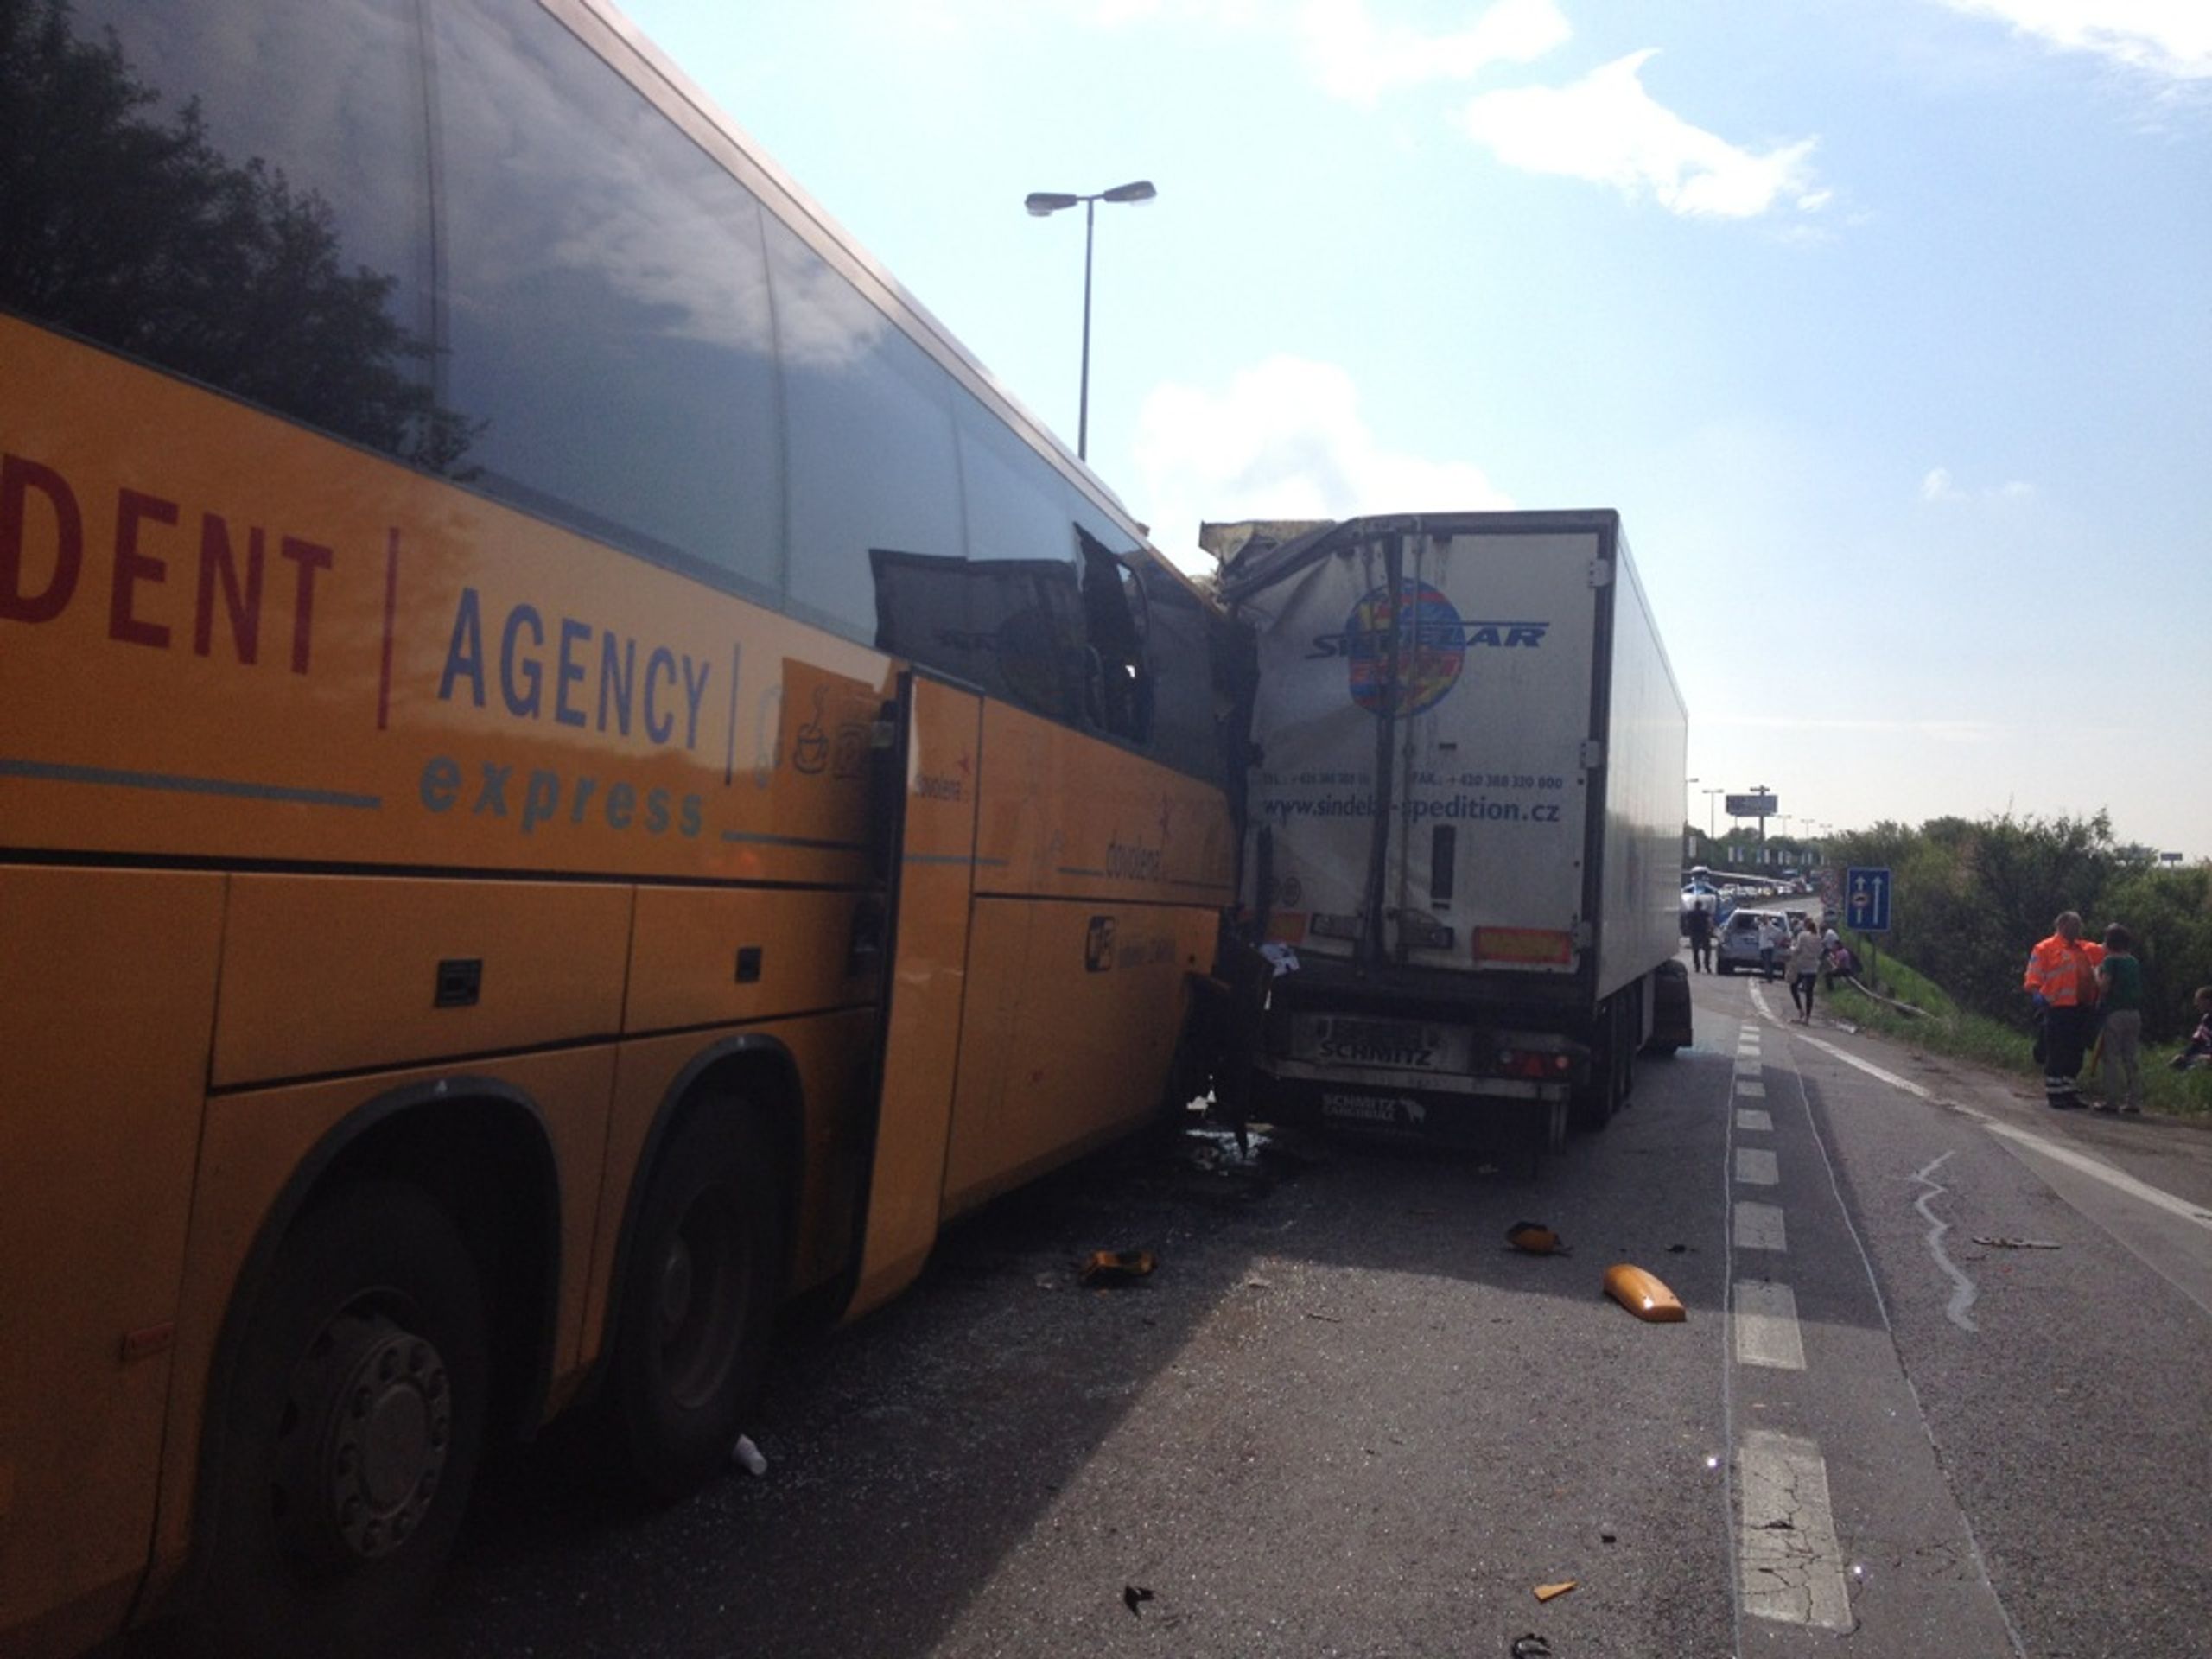 Srážka byla dramatická - GALERIE: Nehoda autobusu Student agency a kamionu (1/6)